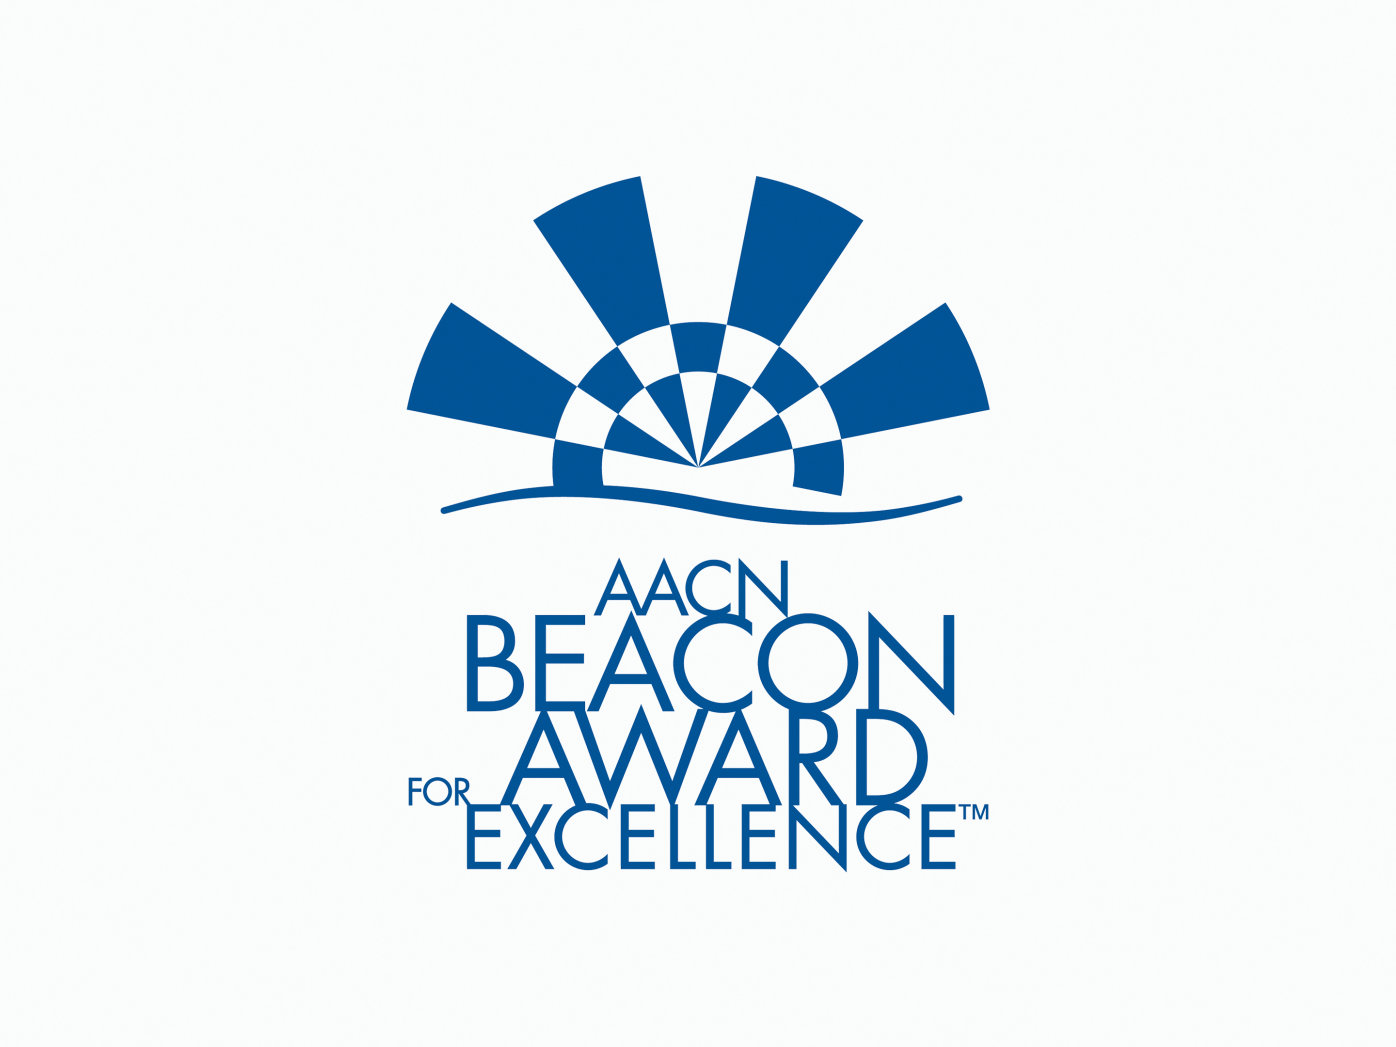 AACN Beacon award for excellence logo